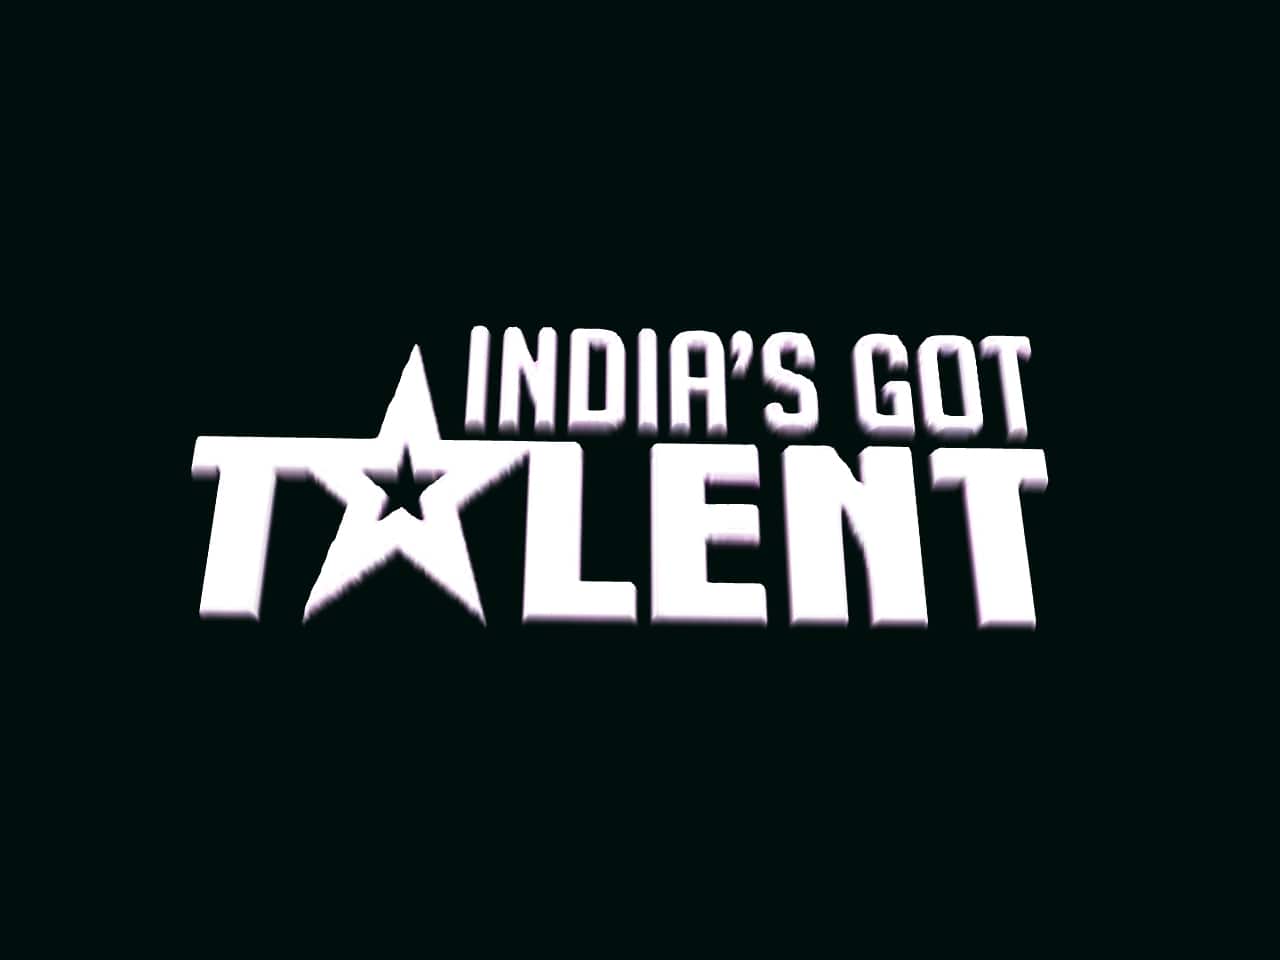 India’s Got Talent Winners List